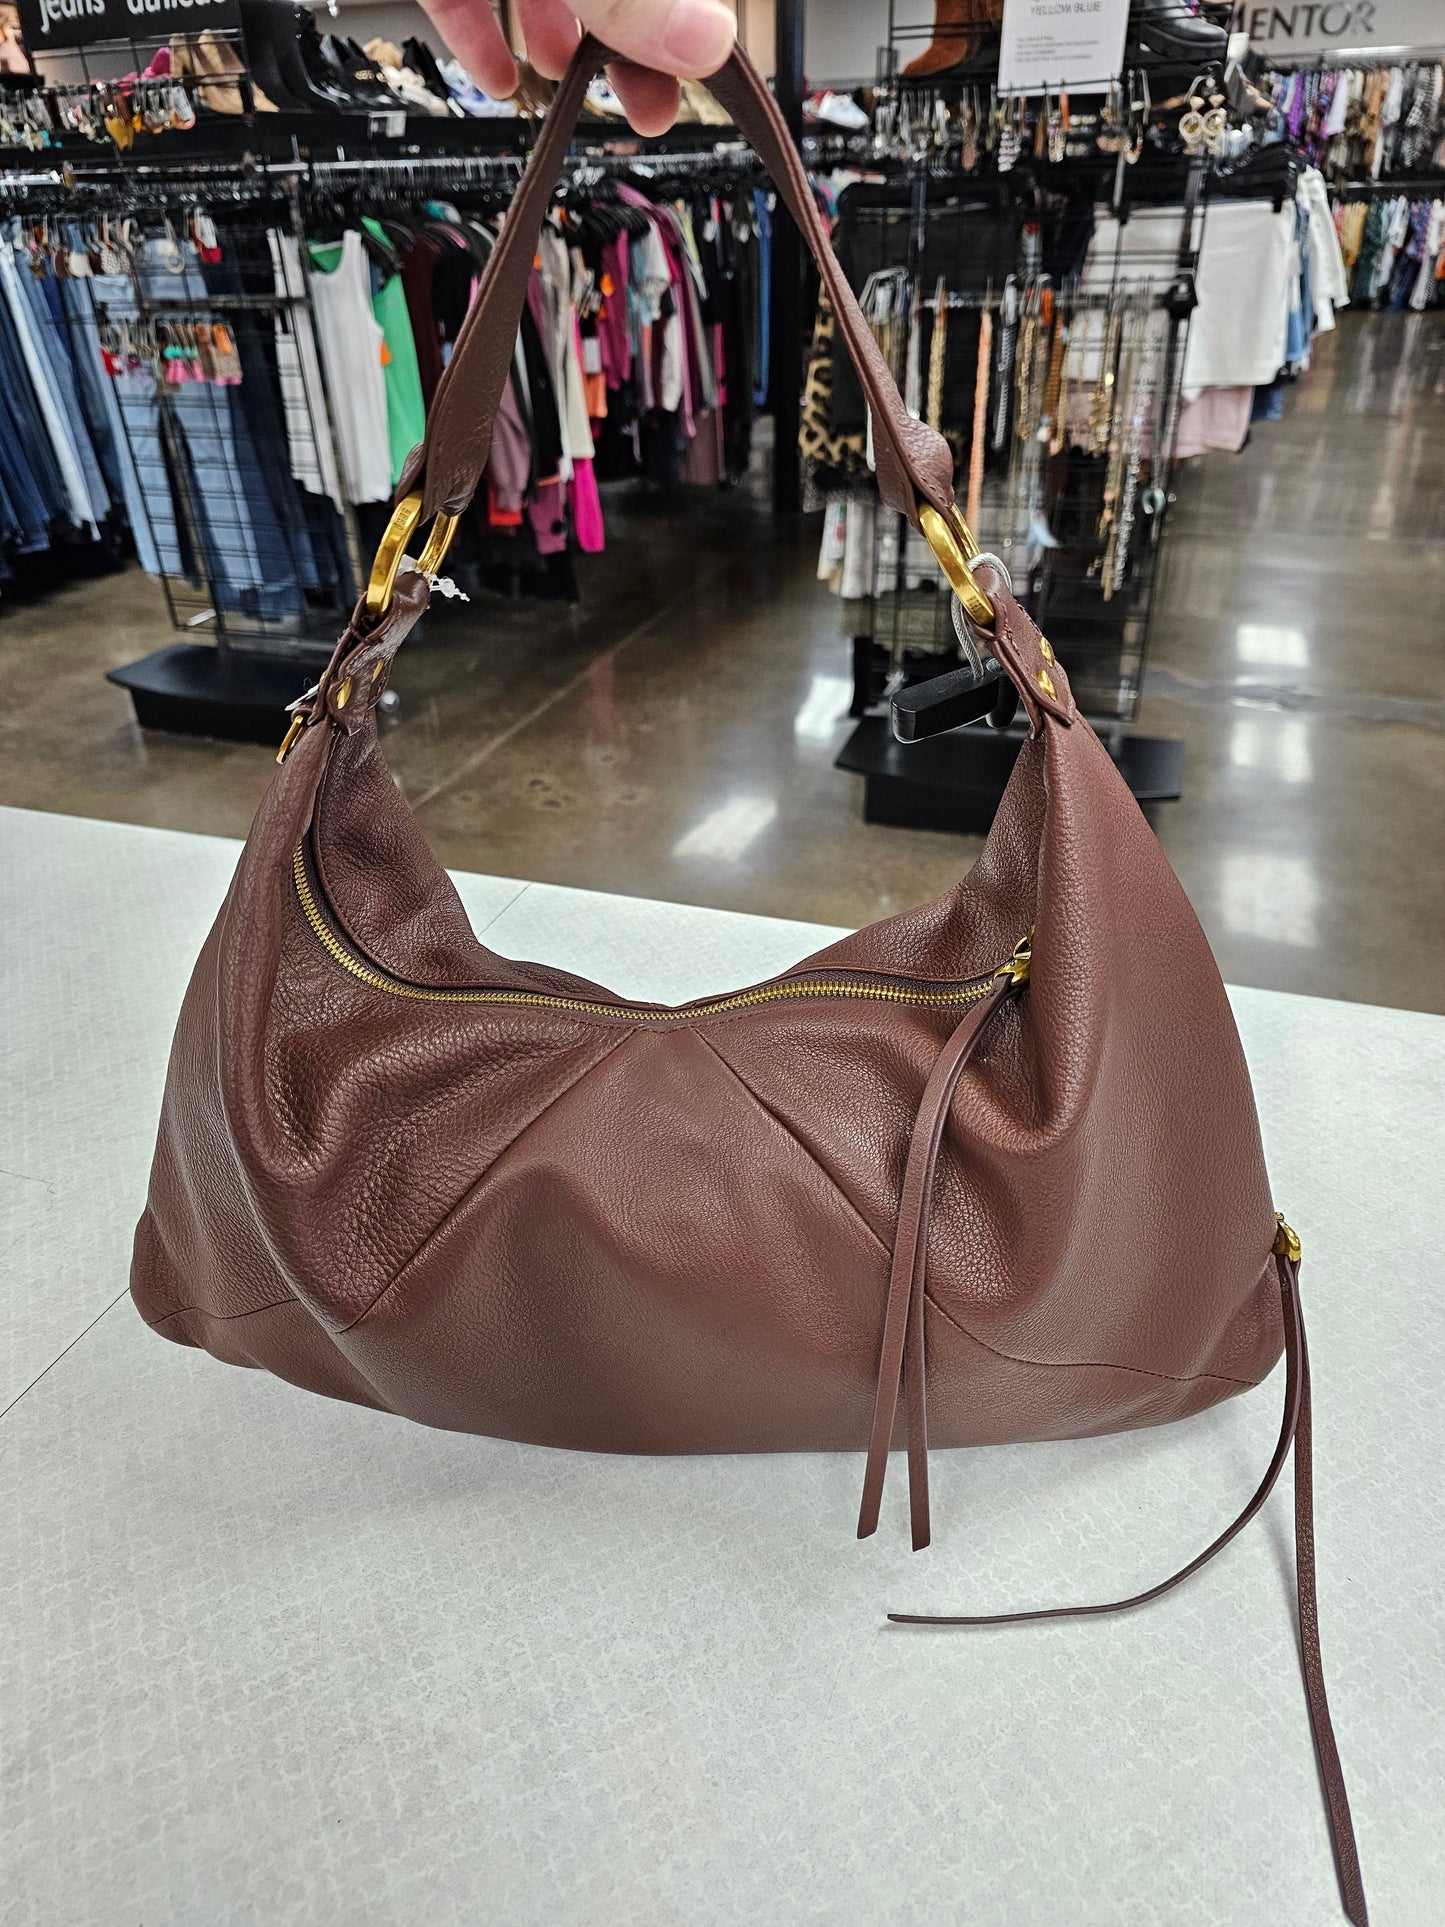 Brown Handbag Designer Hobo Intl, Size Medium